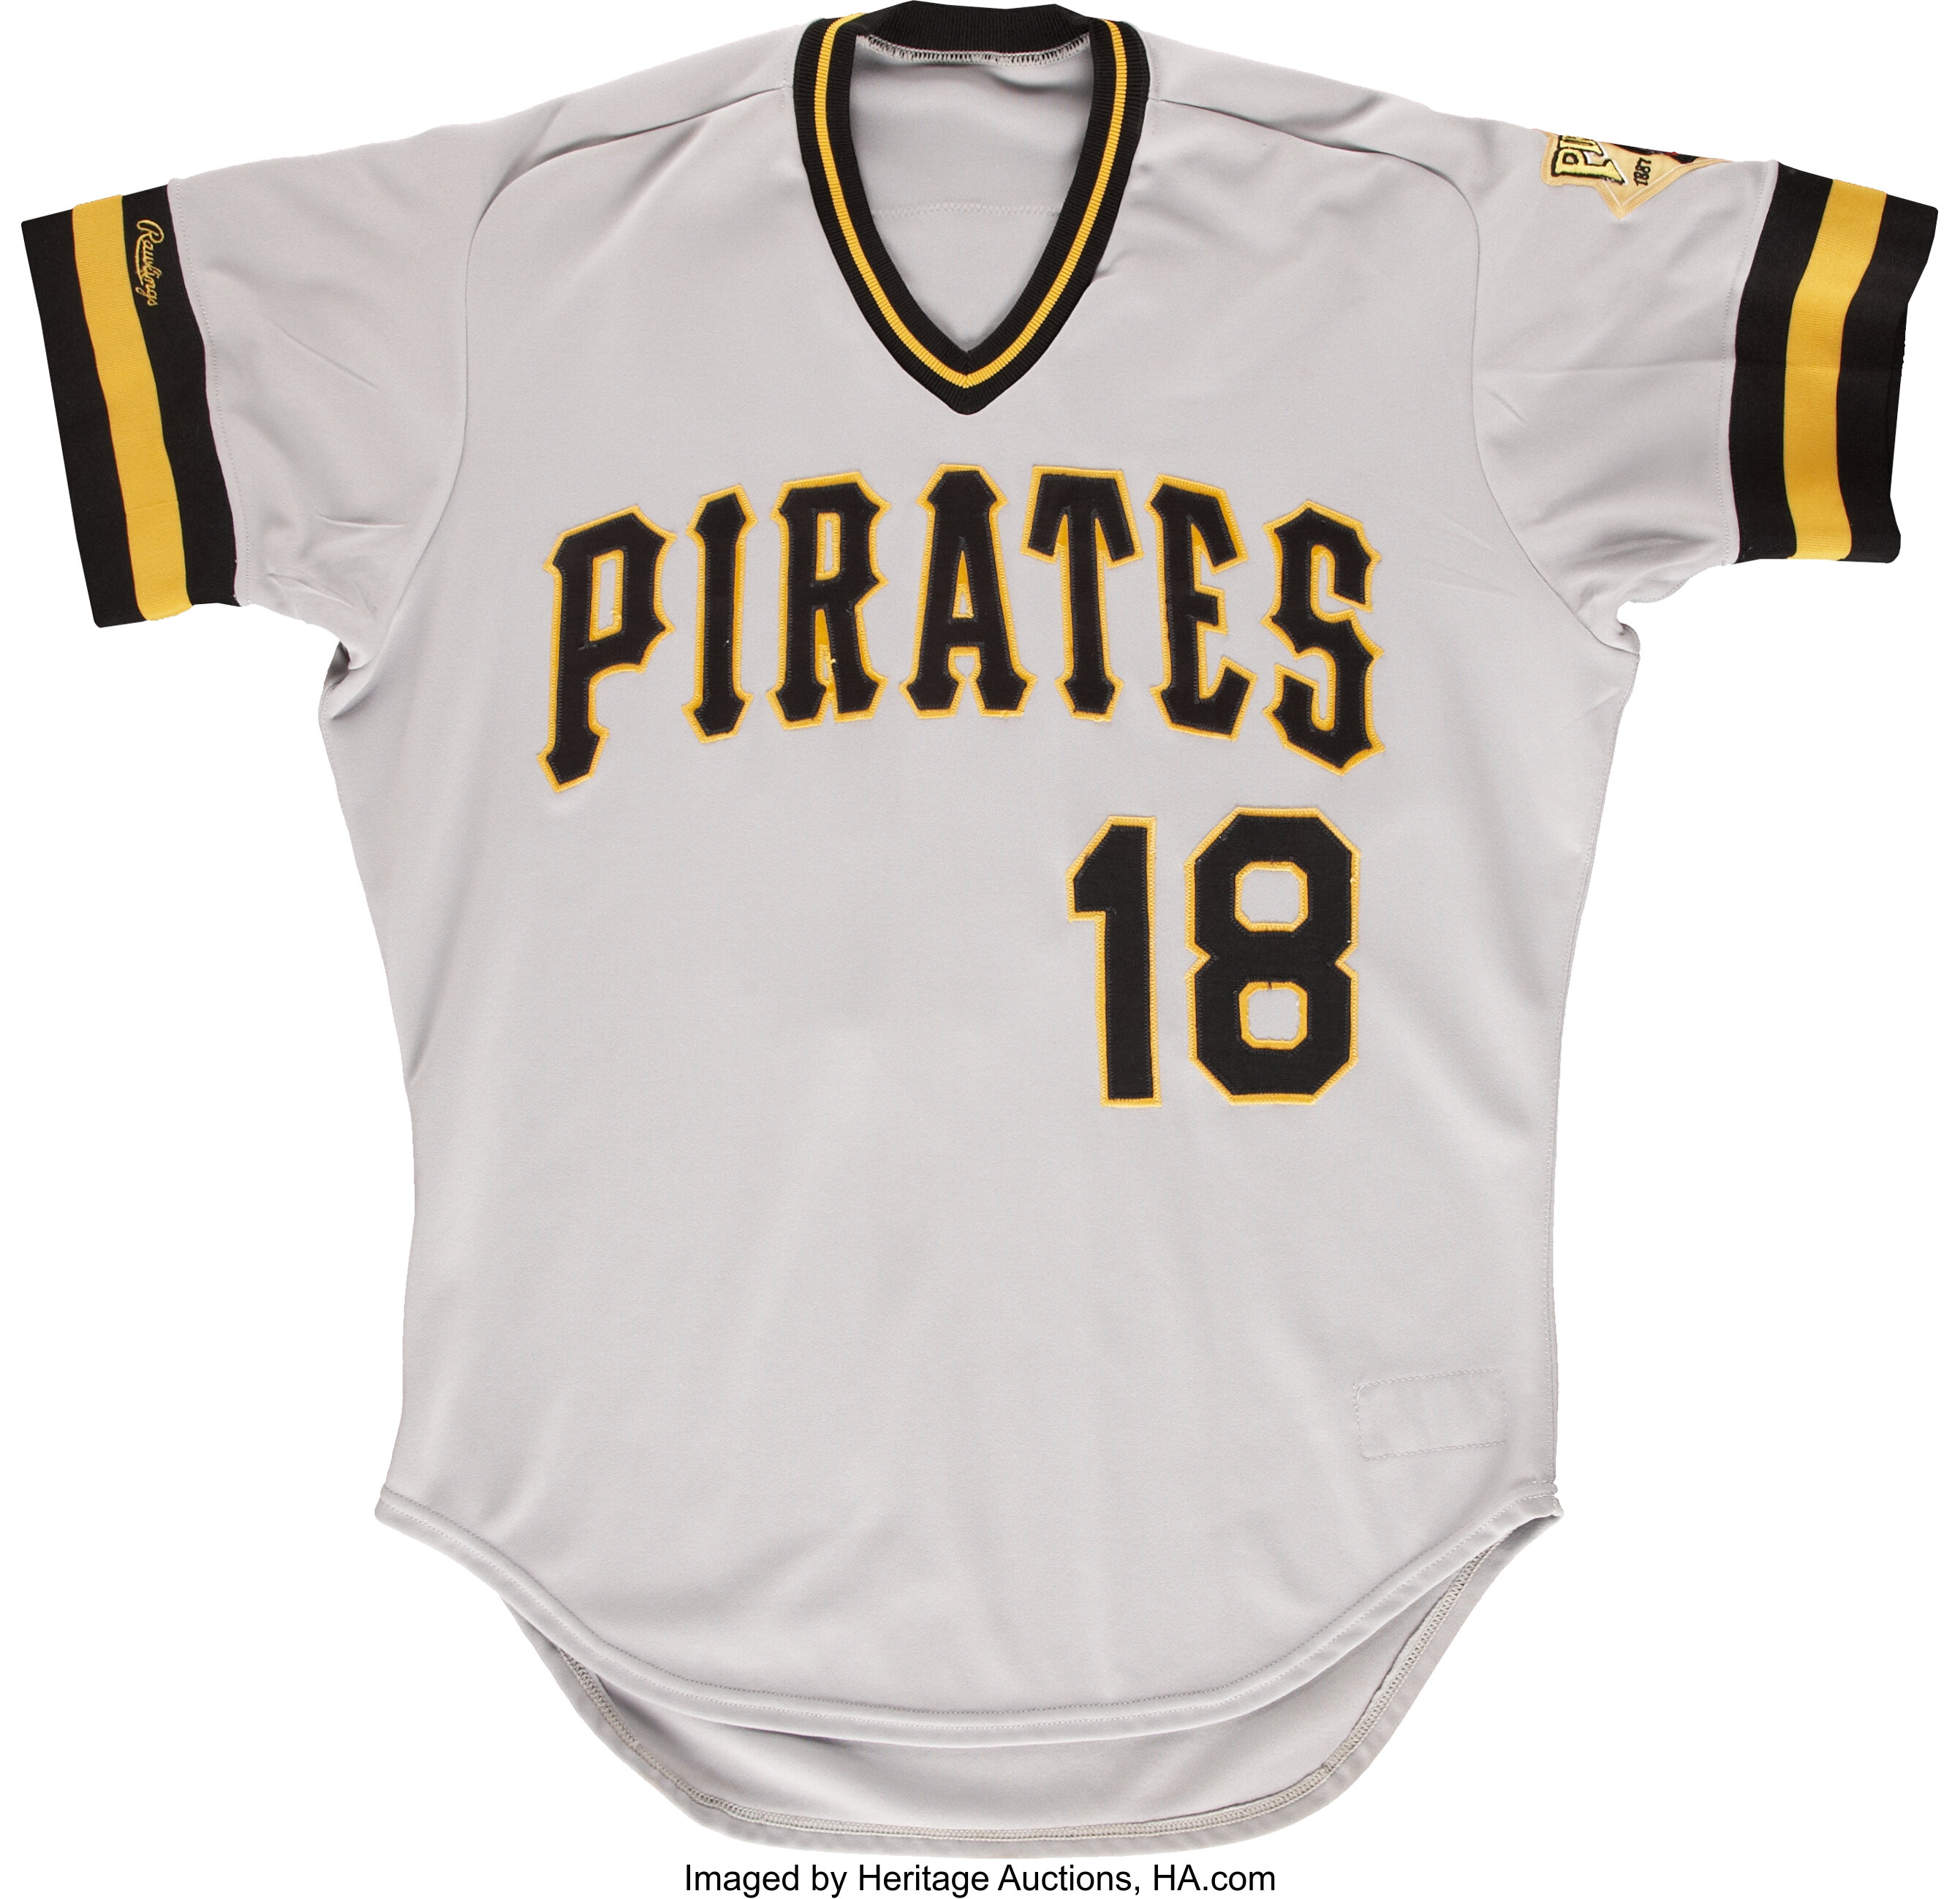 1987 Andy Van Slyke Pittsburgh Pirates Game Worn Jersey.